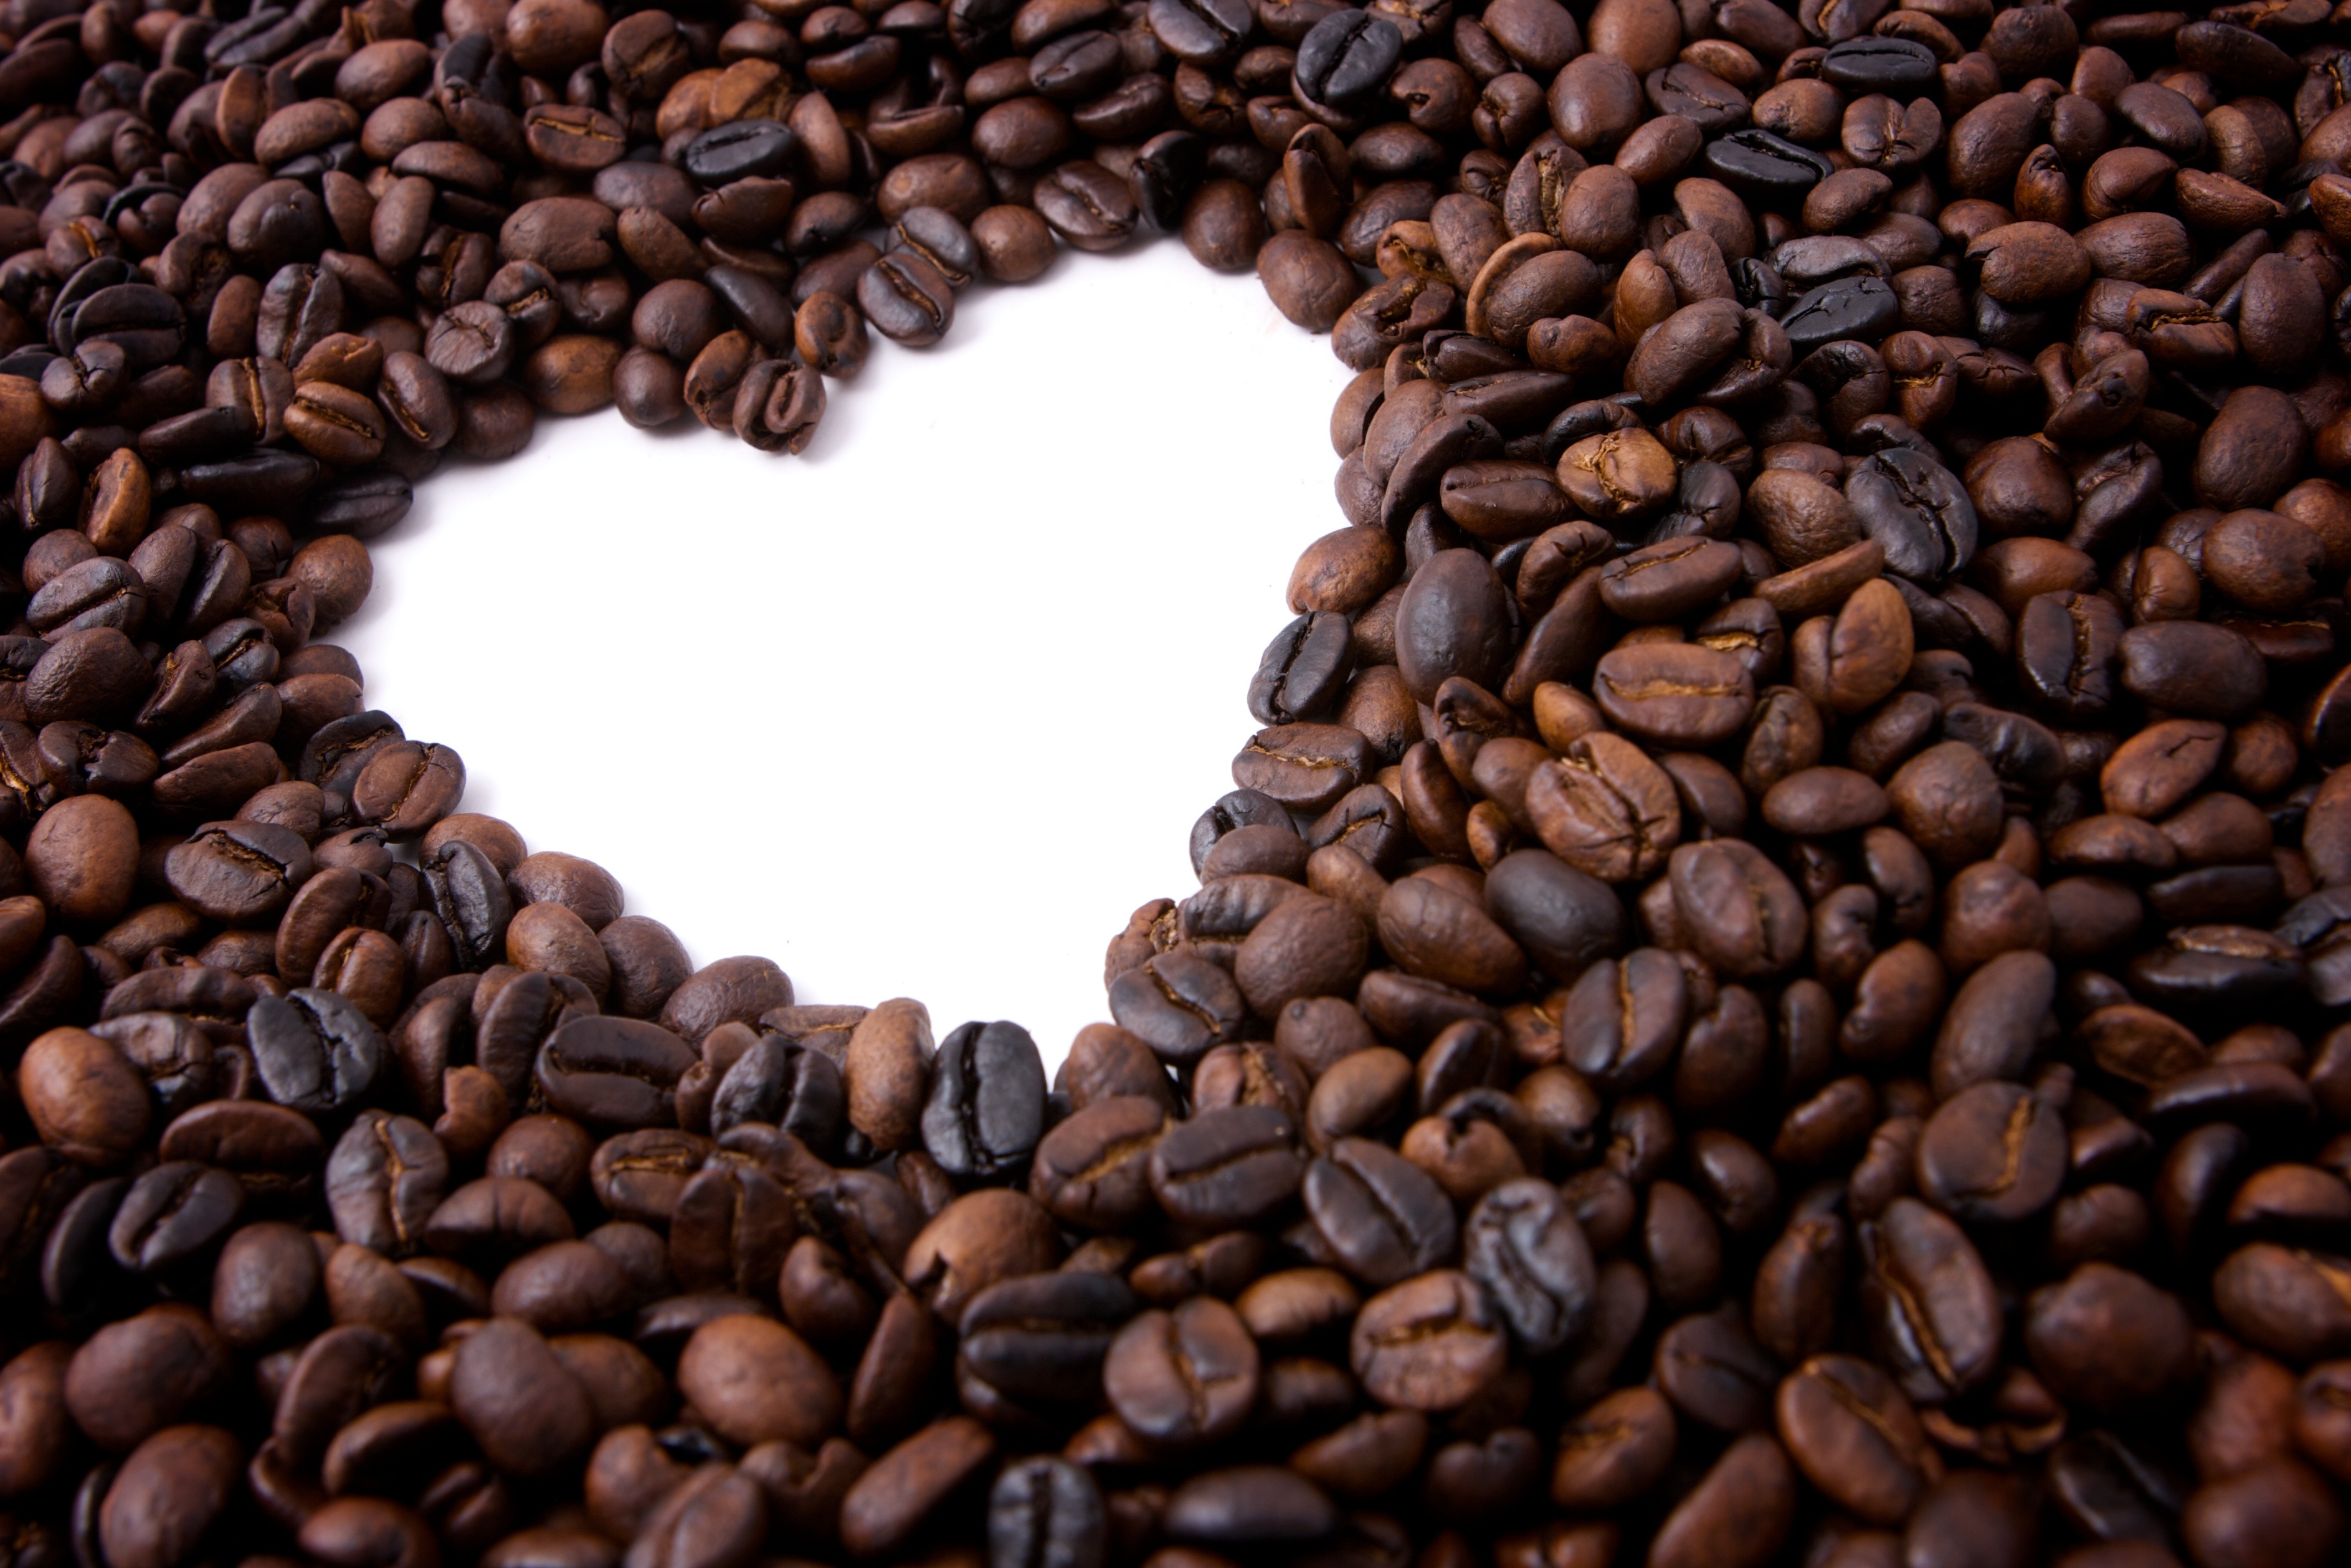 Coffee Health and Wellness